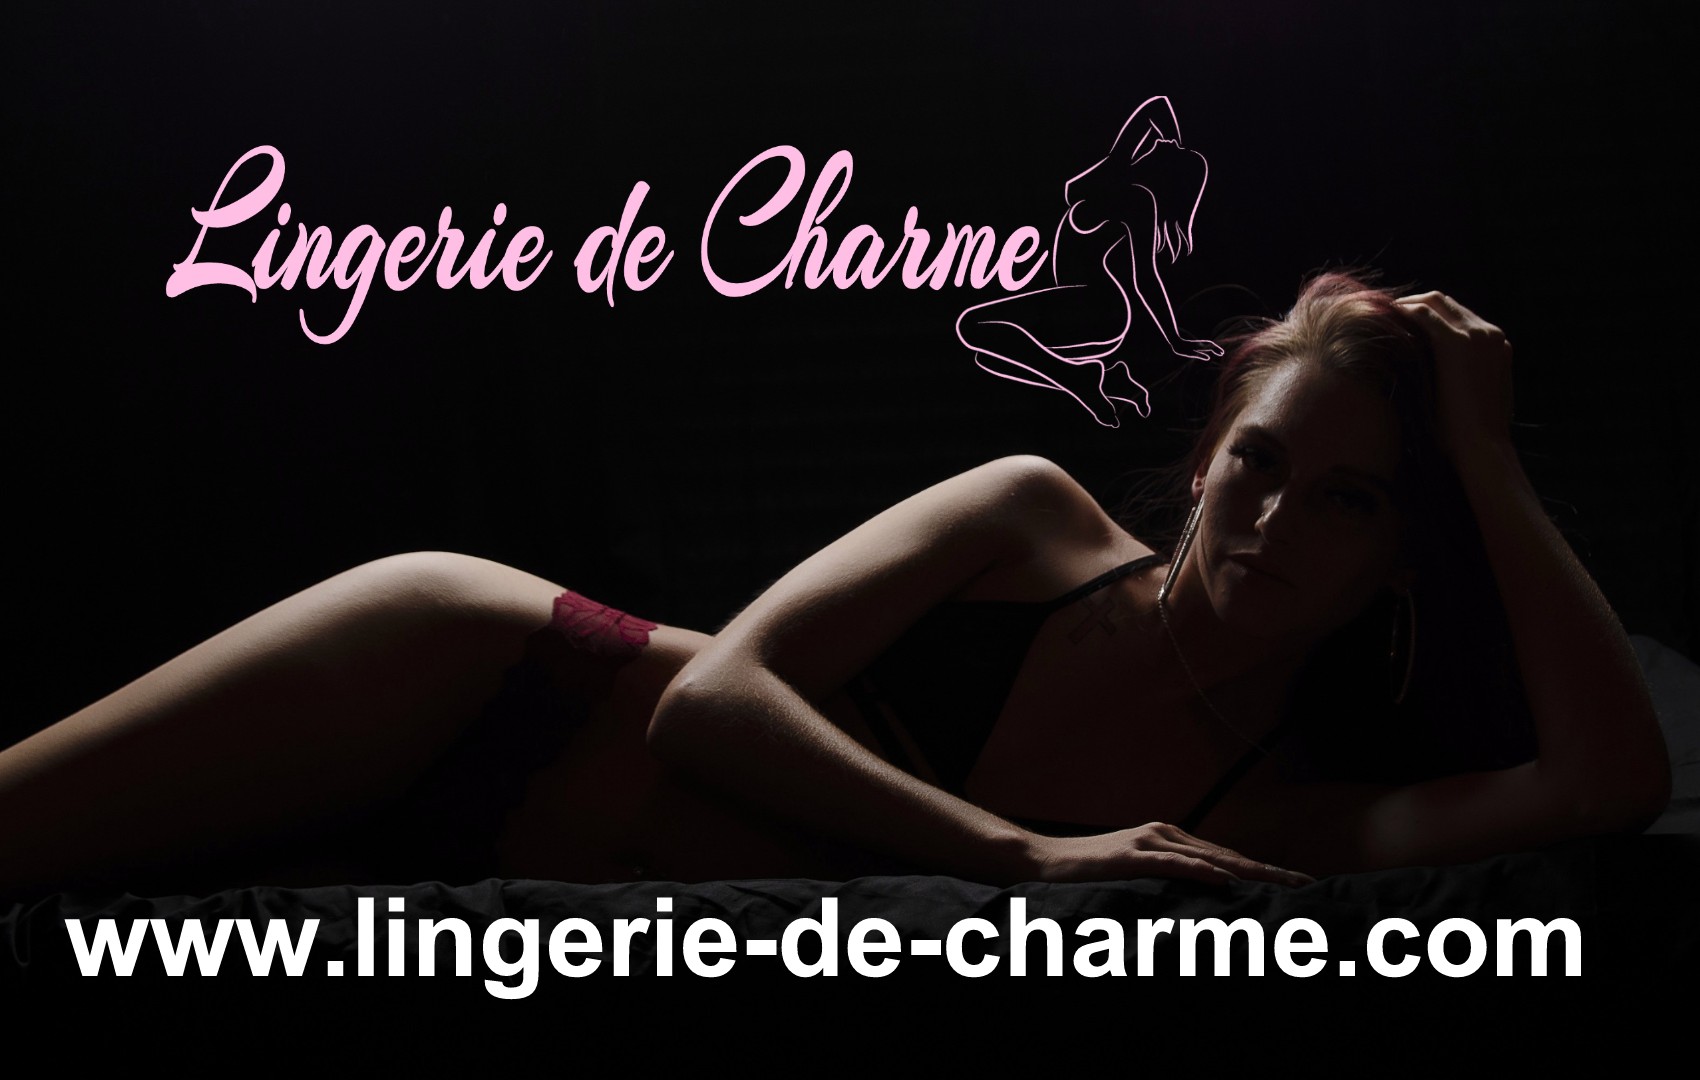 LINGERIE DE CHARME POURSAC 16 - LINGERIE SEXY POURSAC 16